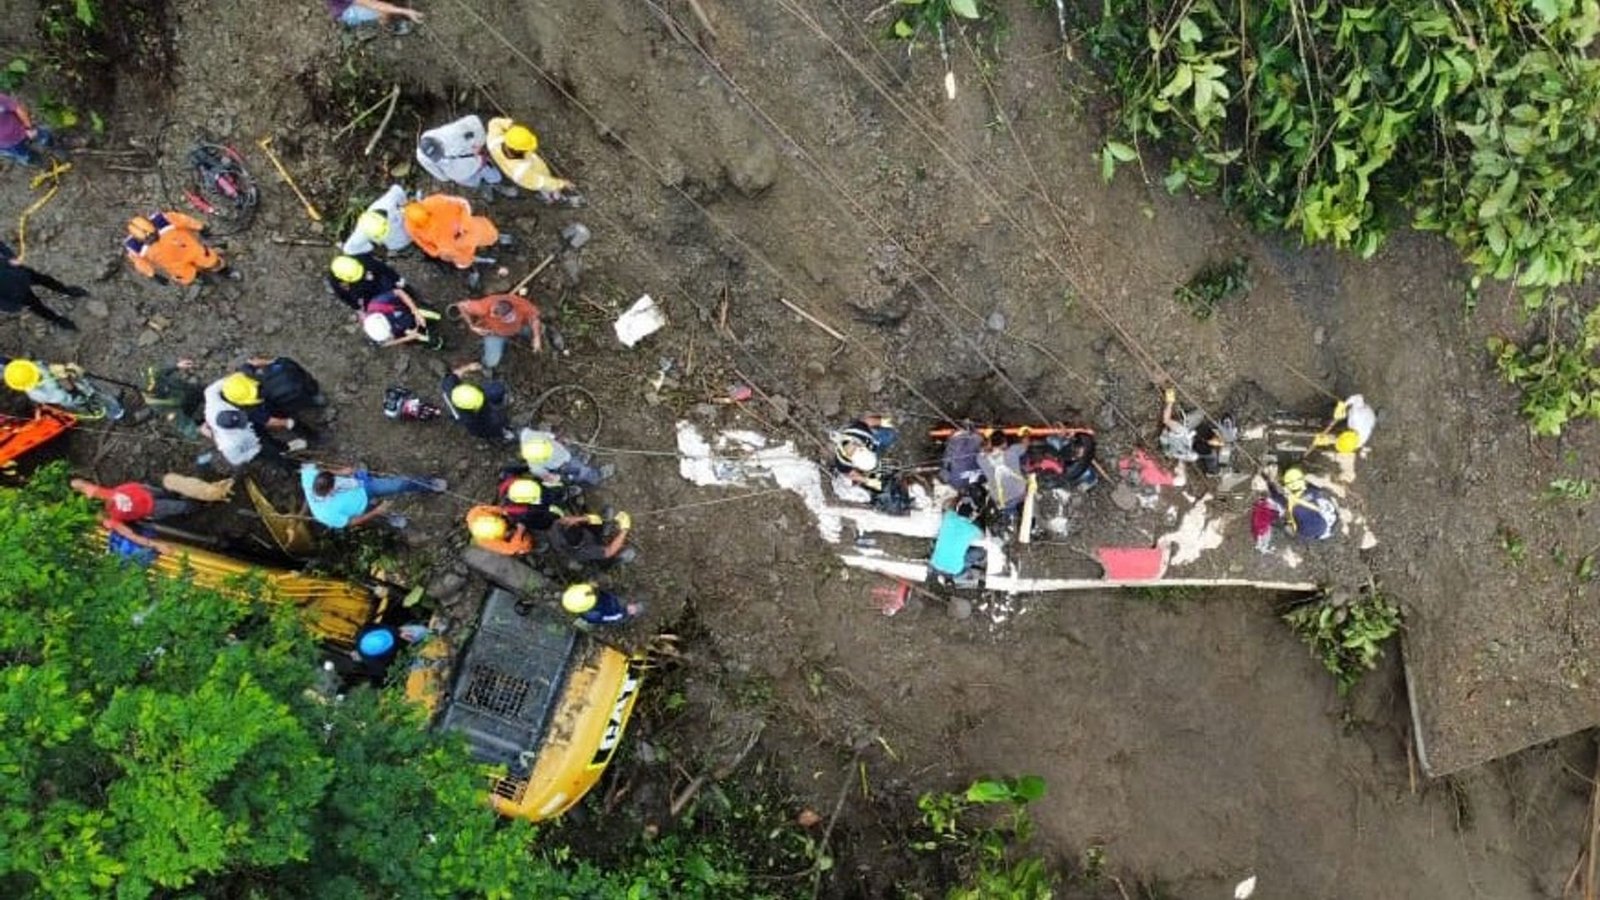 Rettungseinheiten sind im kolumbianischen Risaralda im Einsatz, nachdem Passagiere eines Busses von einem Erdrutsch verschüttet wurden.Foto: UNGRD/colprensa/dpa